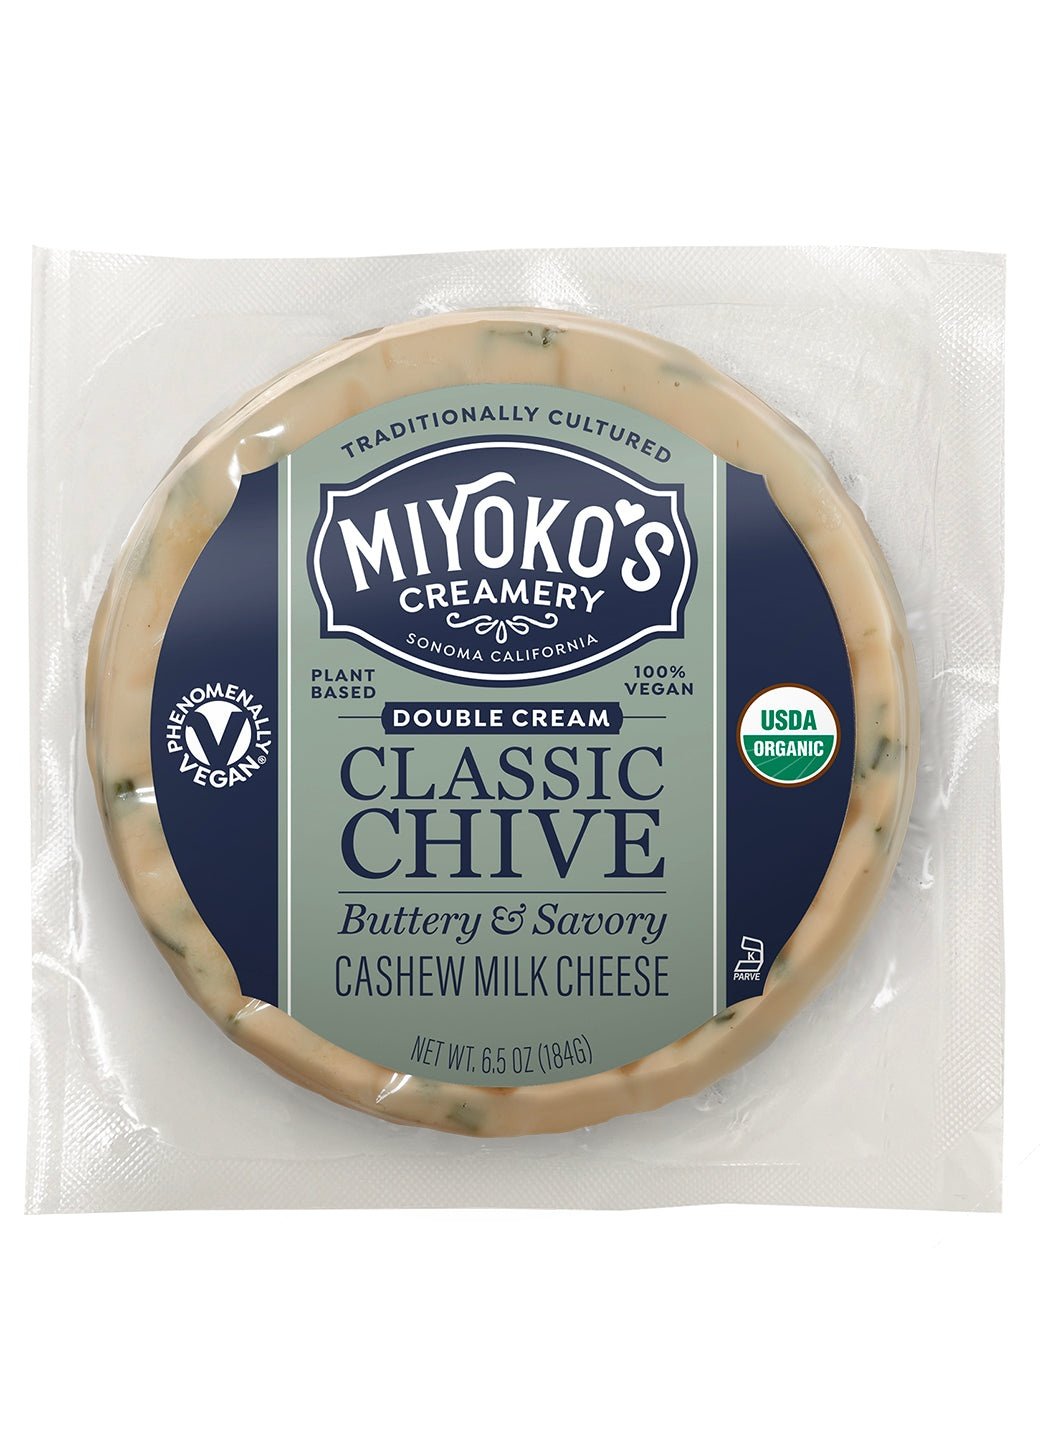 MIYOKO'S CREAMERY Double Cream Classic Chive Cashew Milk Cheese